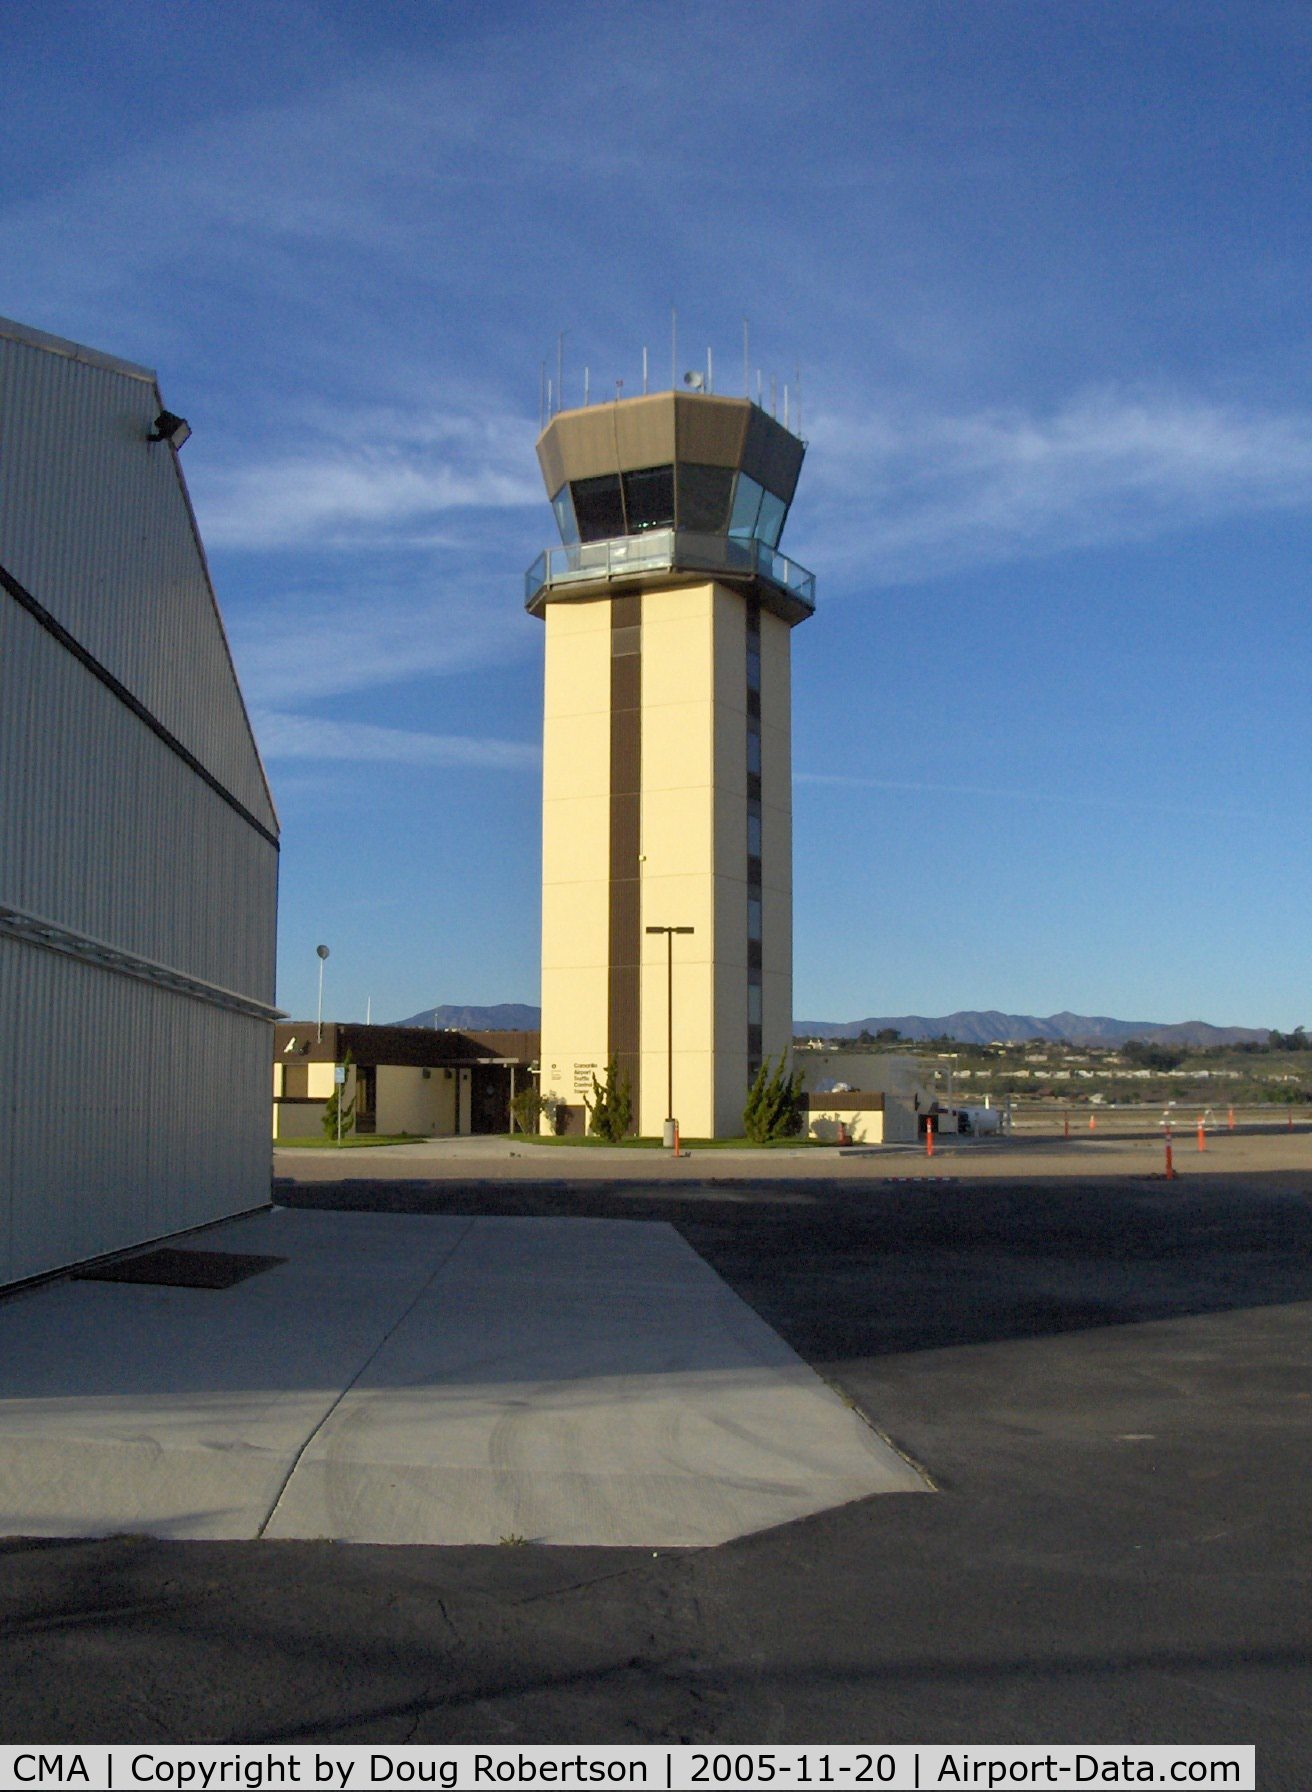 Camarillo Airport (CMA) - Camarillo, California FAA Control Tower, mid-field, South. CMA